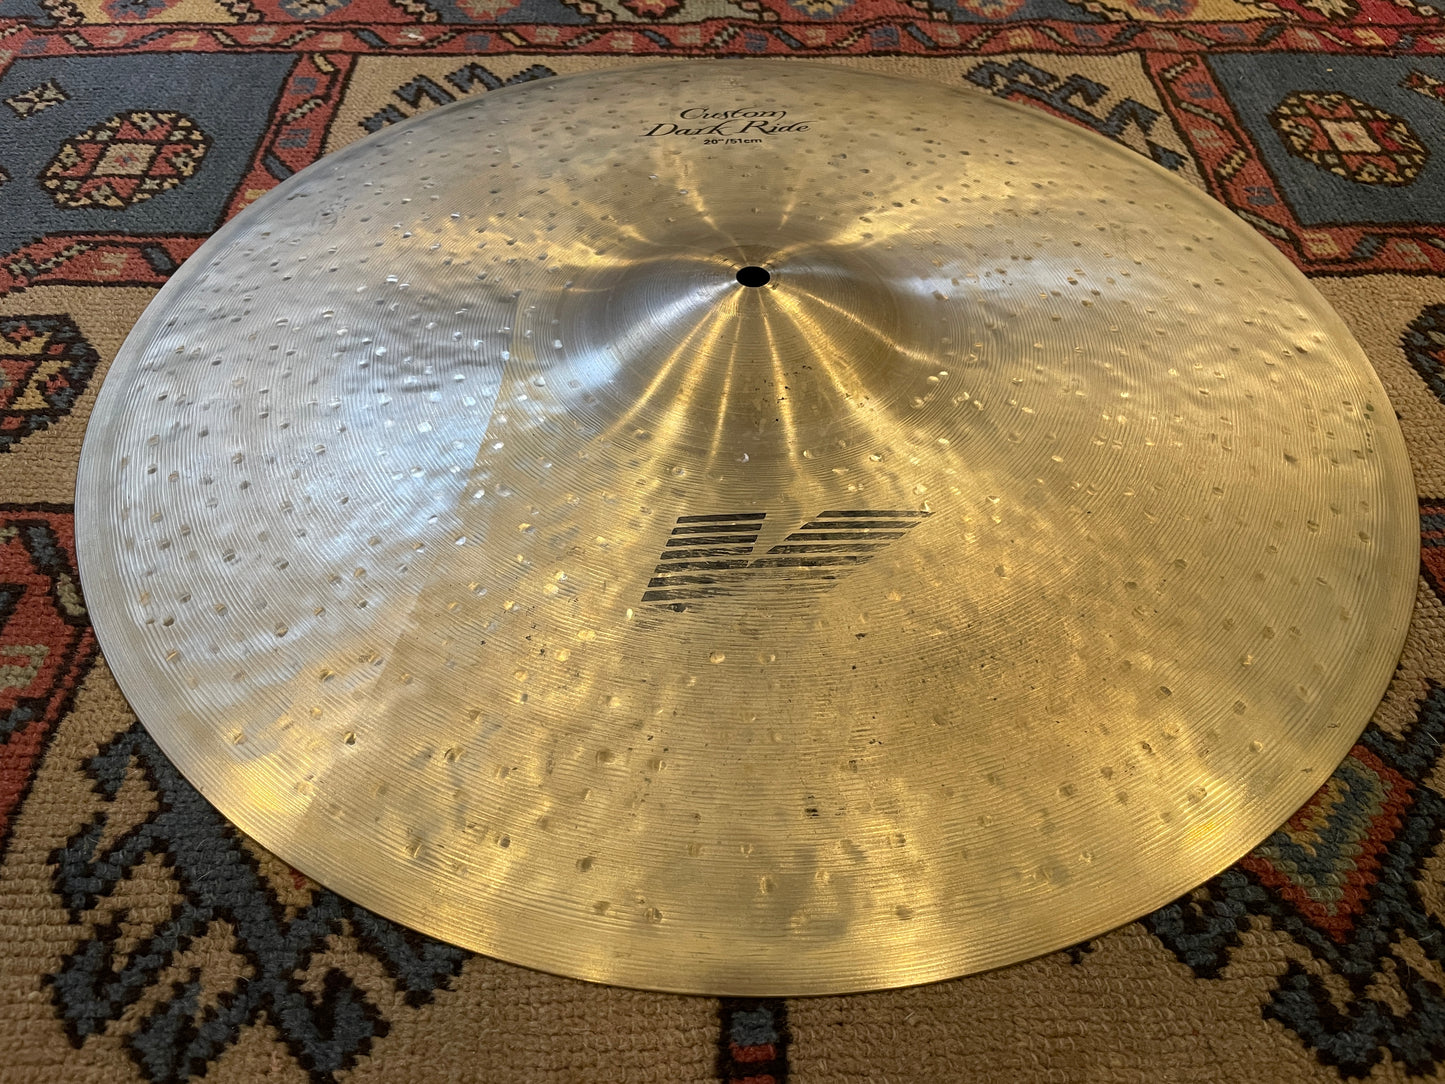 20" Zildjian K Custom Dark Ride Cymbal K0965 2148g